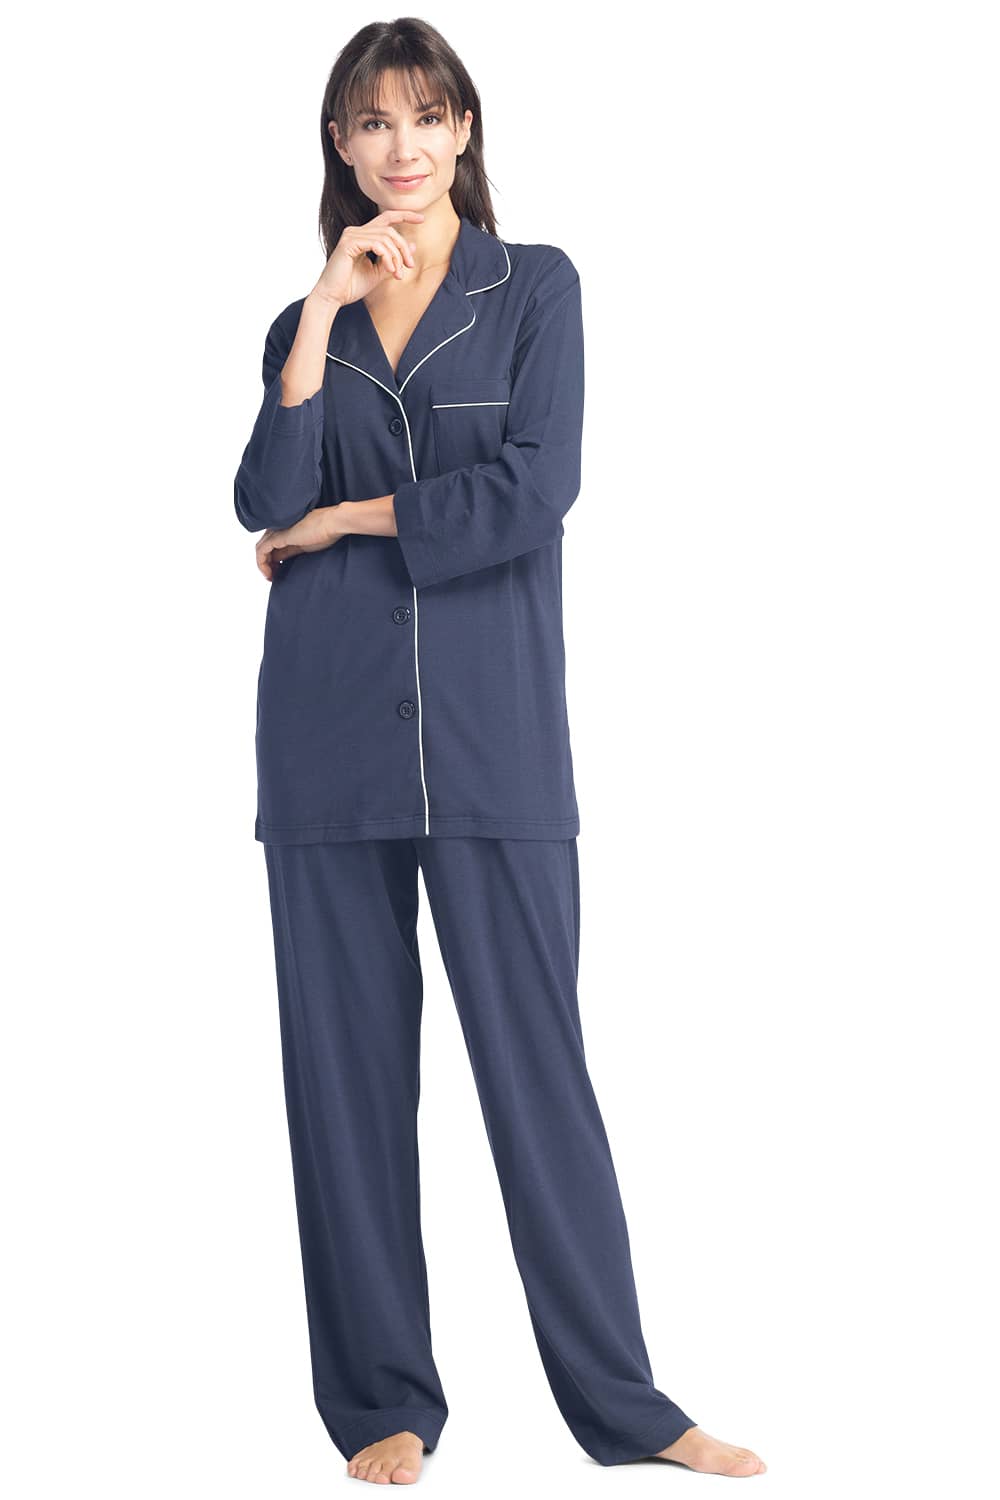 Women's Pajamas, Cotton Long Sleeve Pajama Set